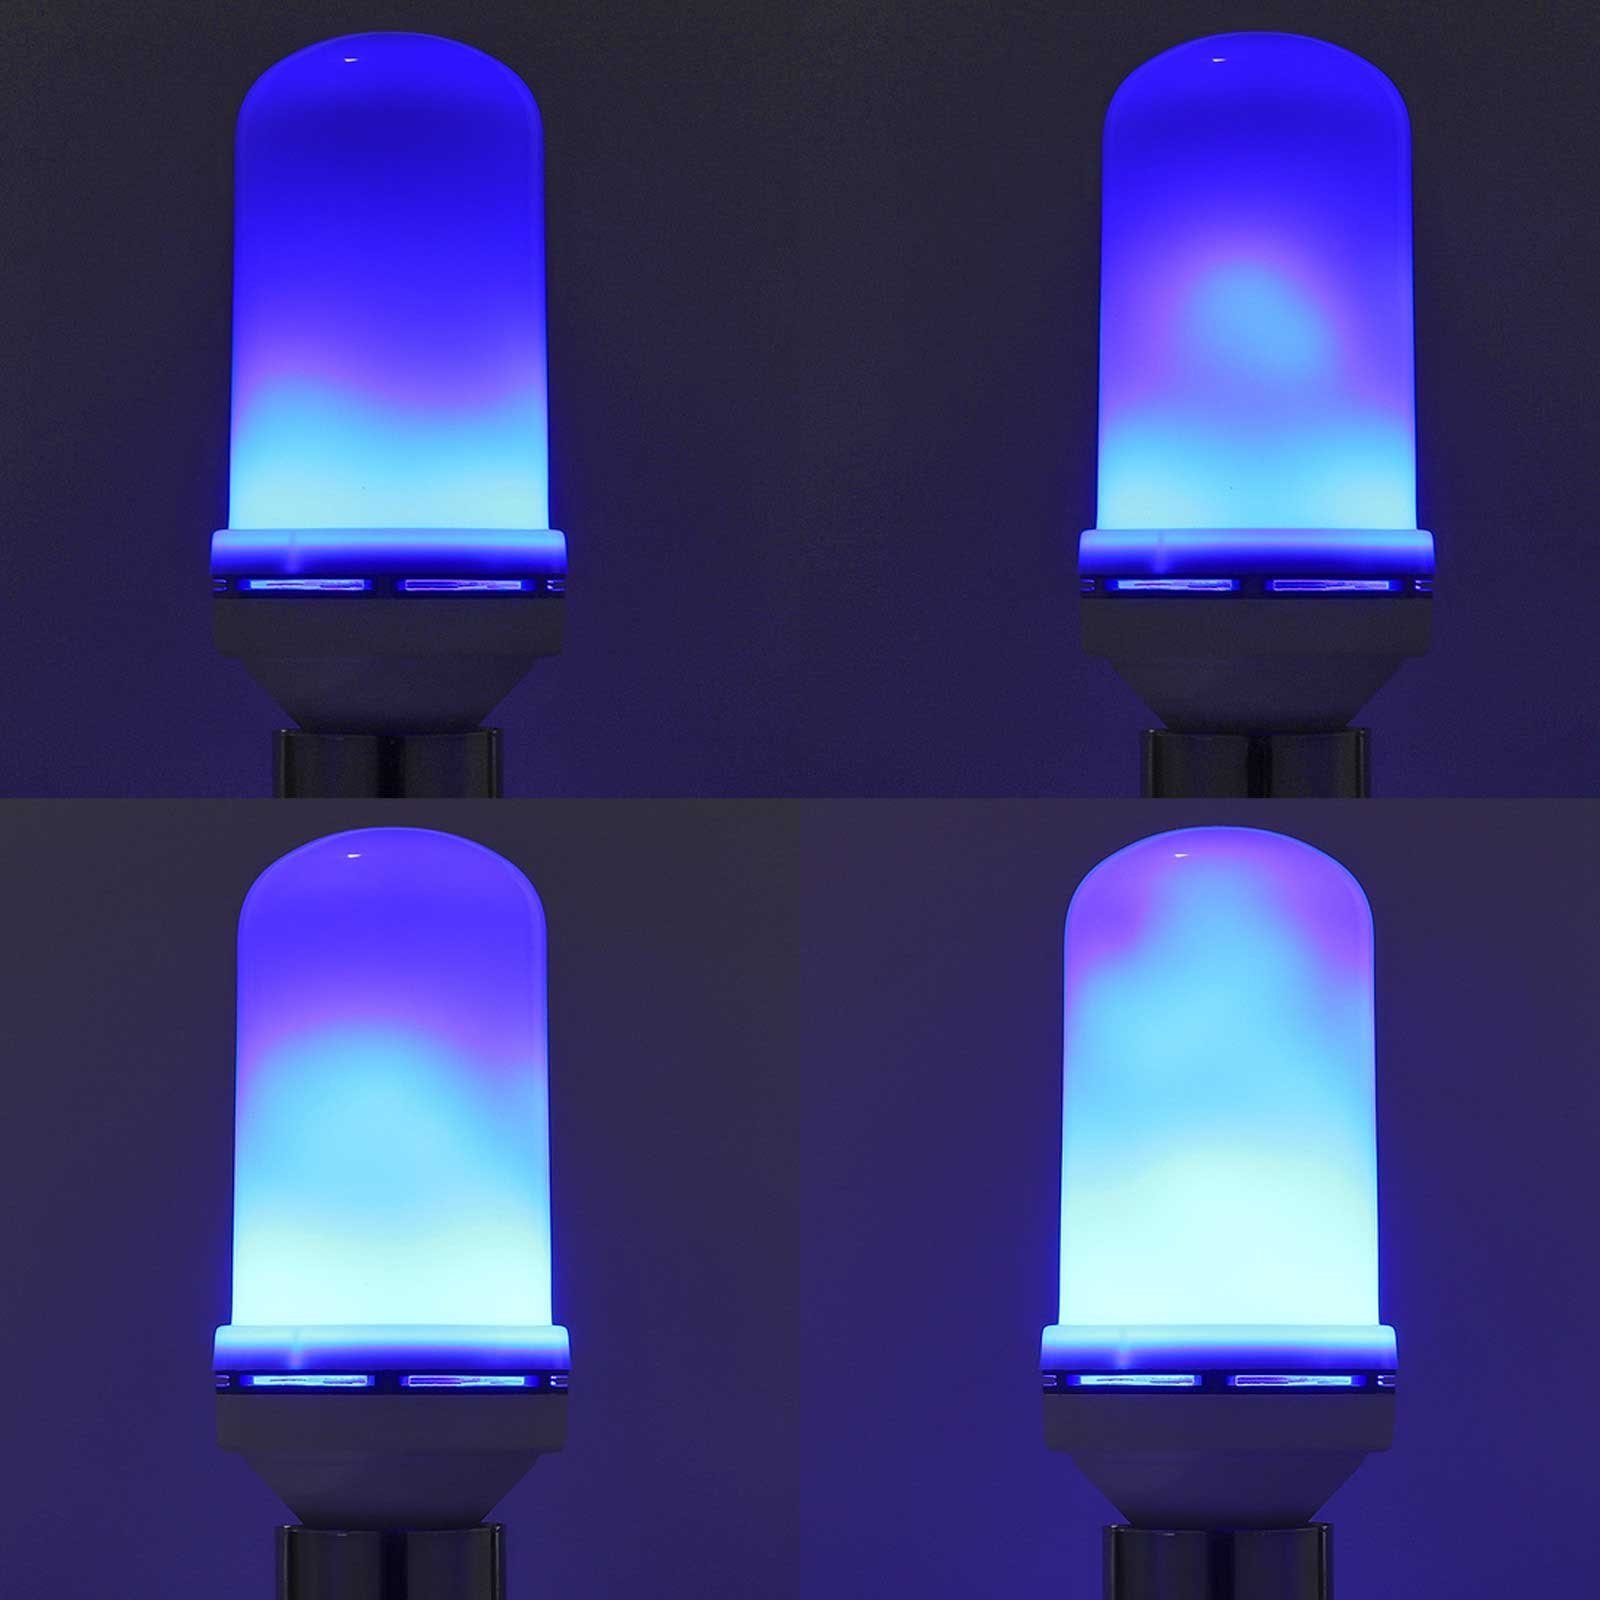 Flammeneffekt, Halloween Weihnachten, 4 Regenbogen/Gelb/Blau Modi, für E27, Rosnek Dekolicht LED